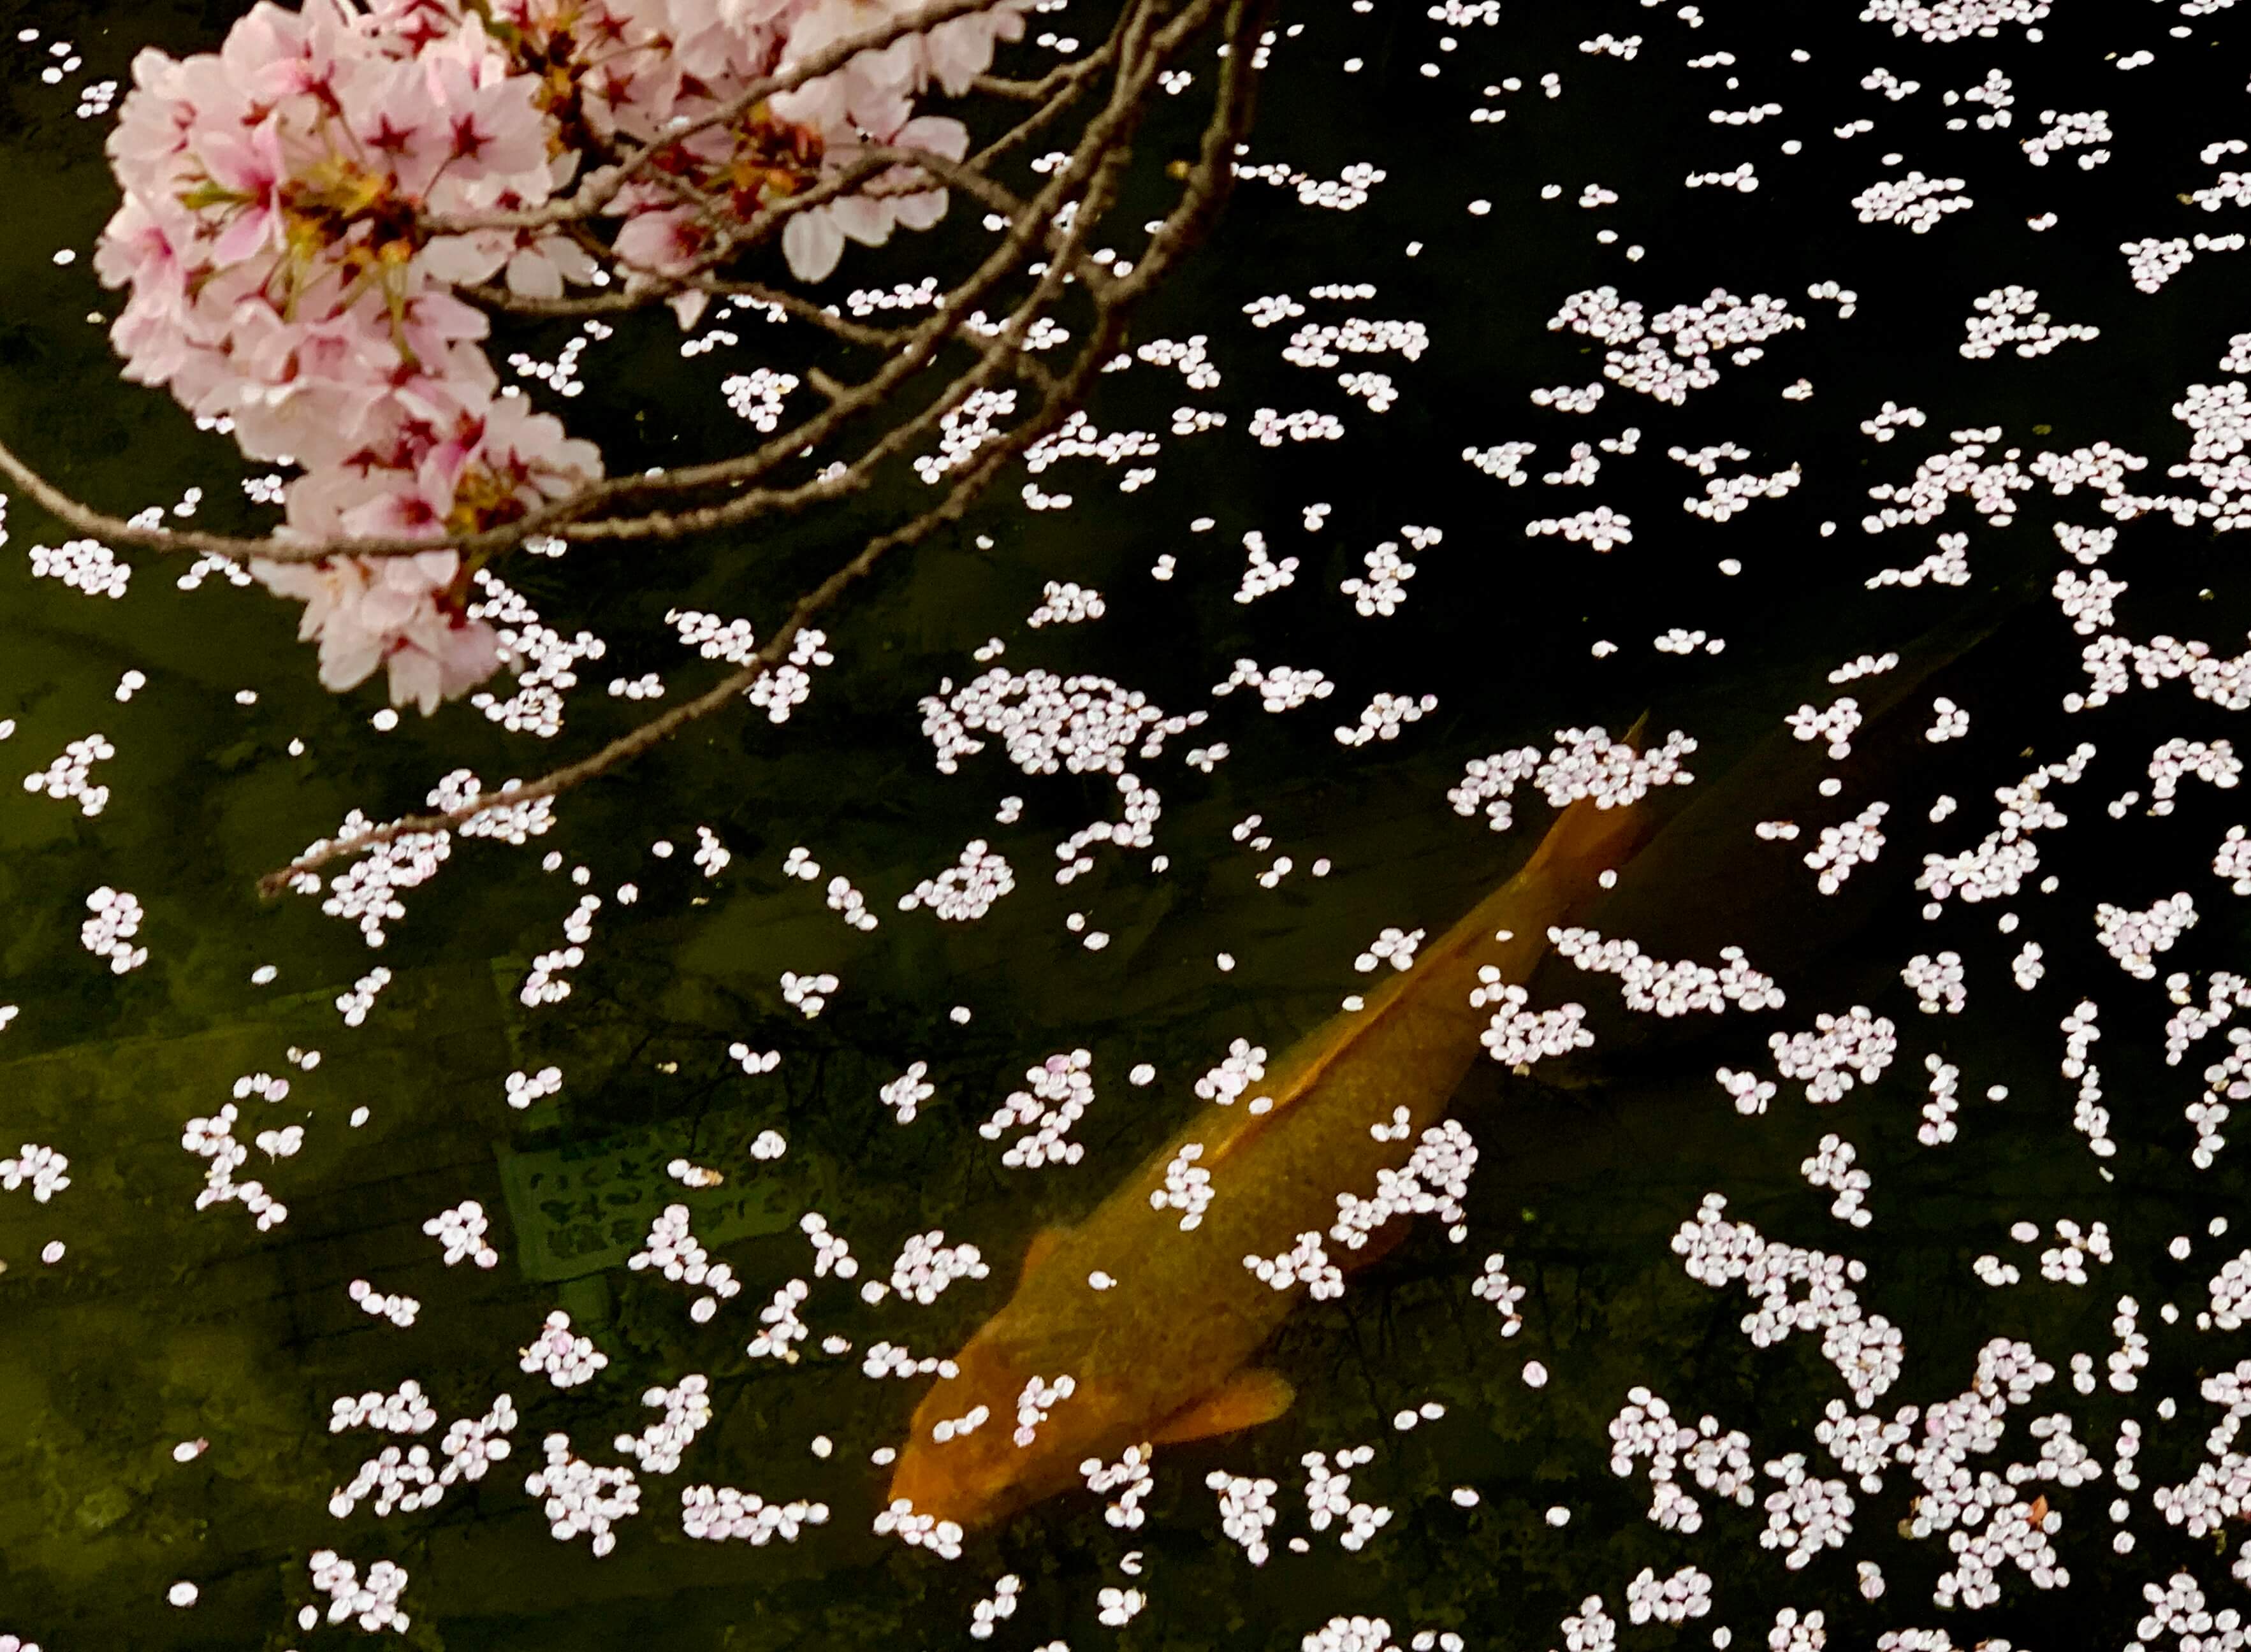 散る桜 残る桜も 散る桜 京菜味のむら